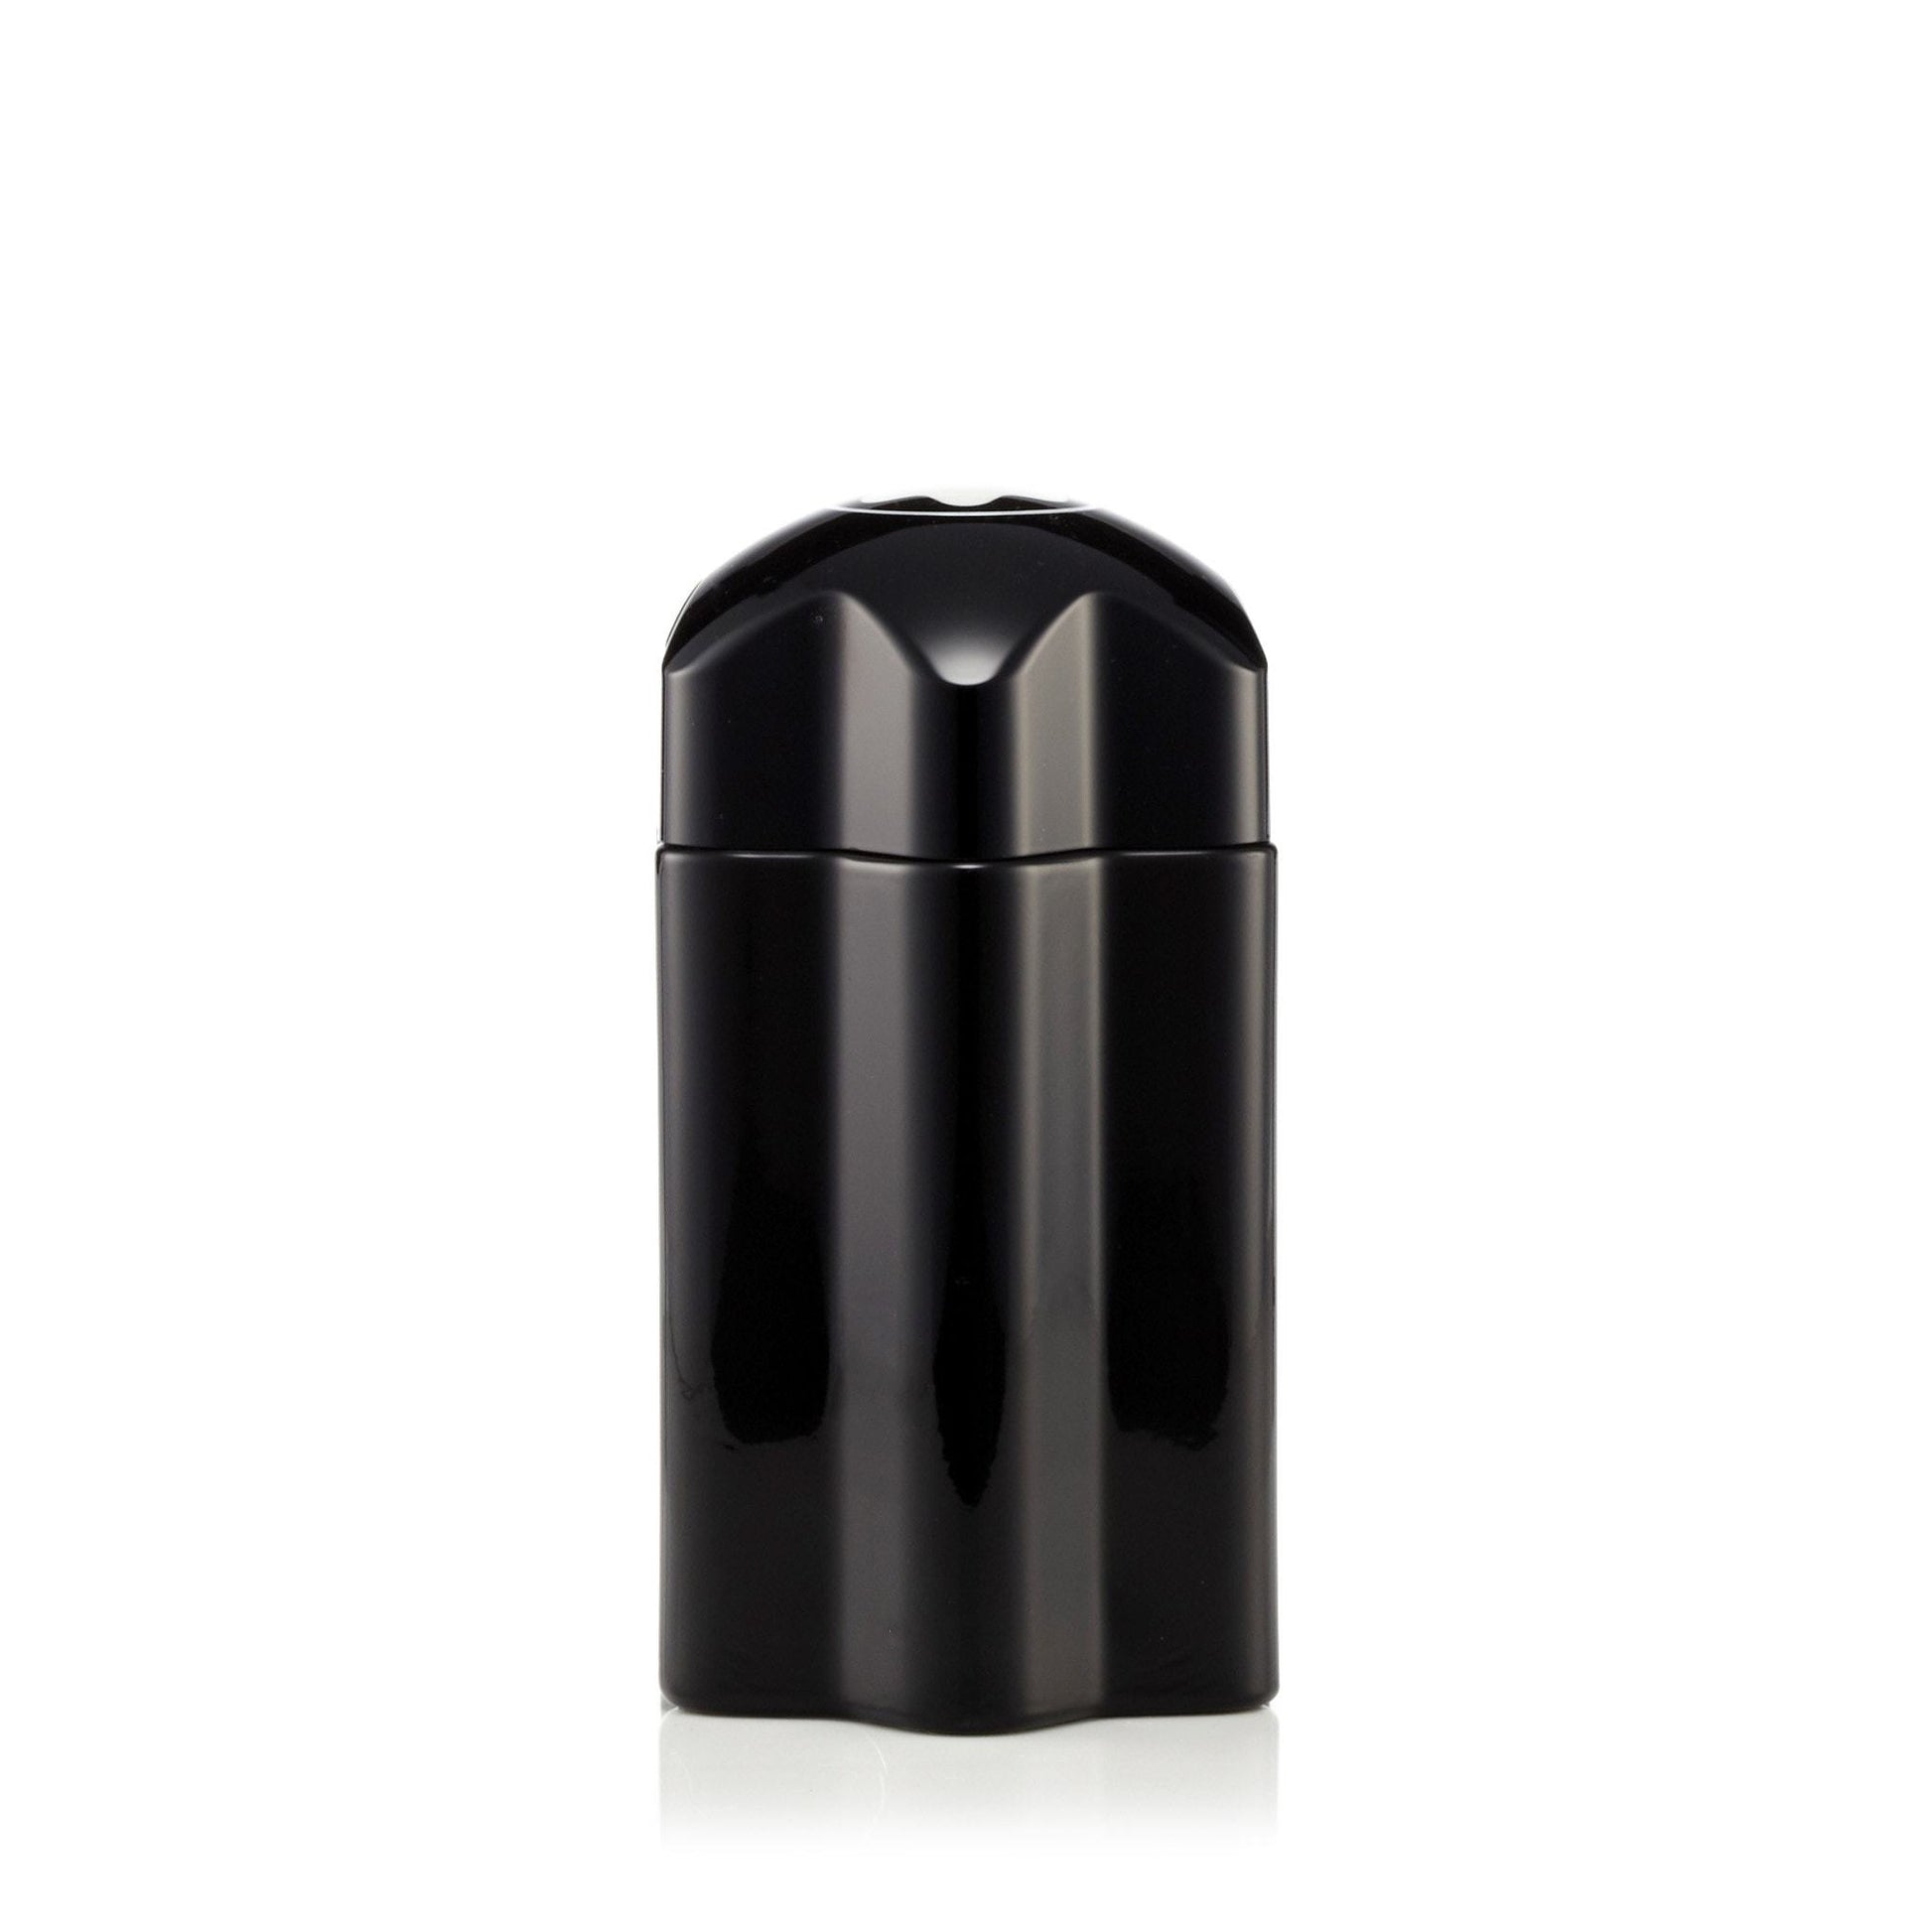 Emblem Eau de Toilette Spray for Men by Montblanc, Product image 1